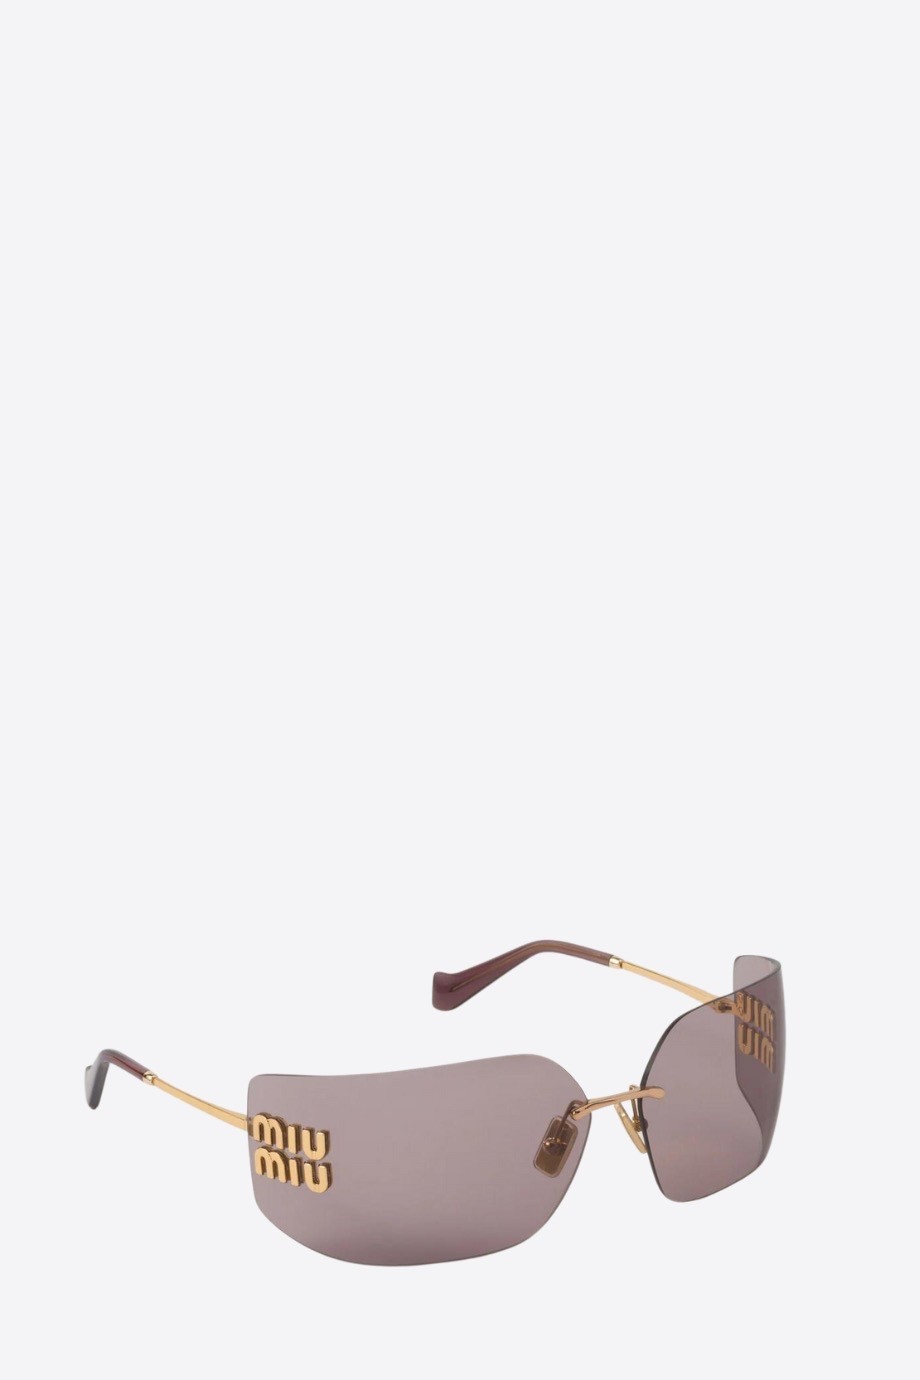 Miu Miu - Runway frameless sunglasses